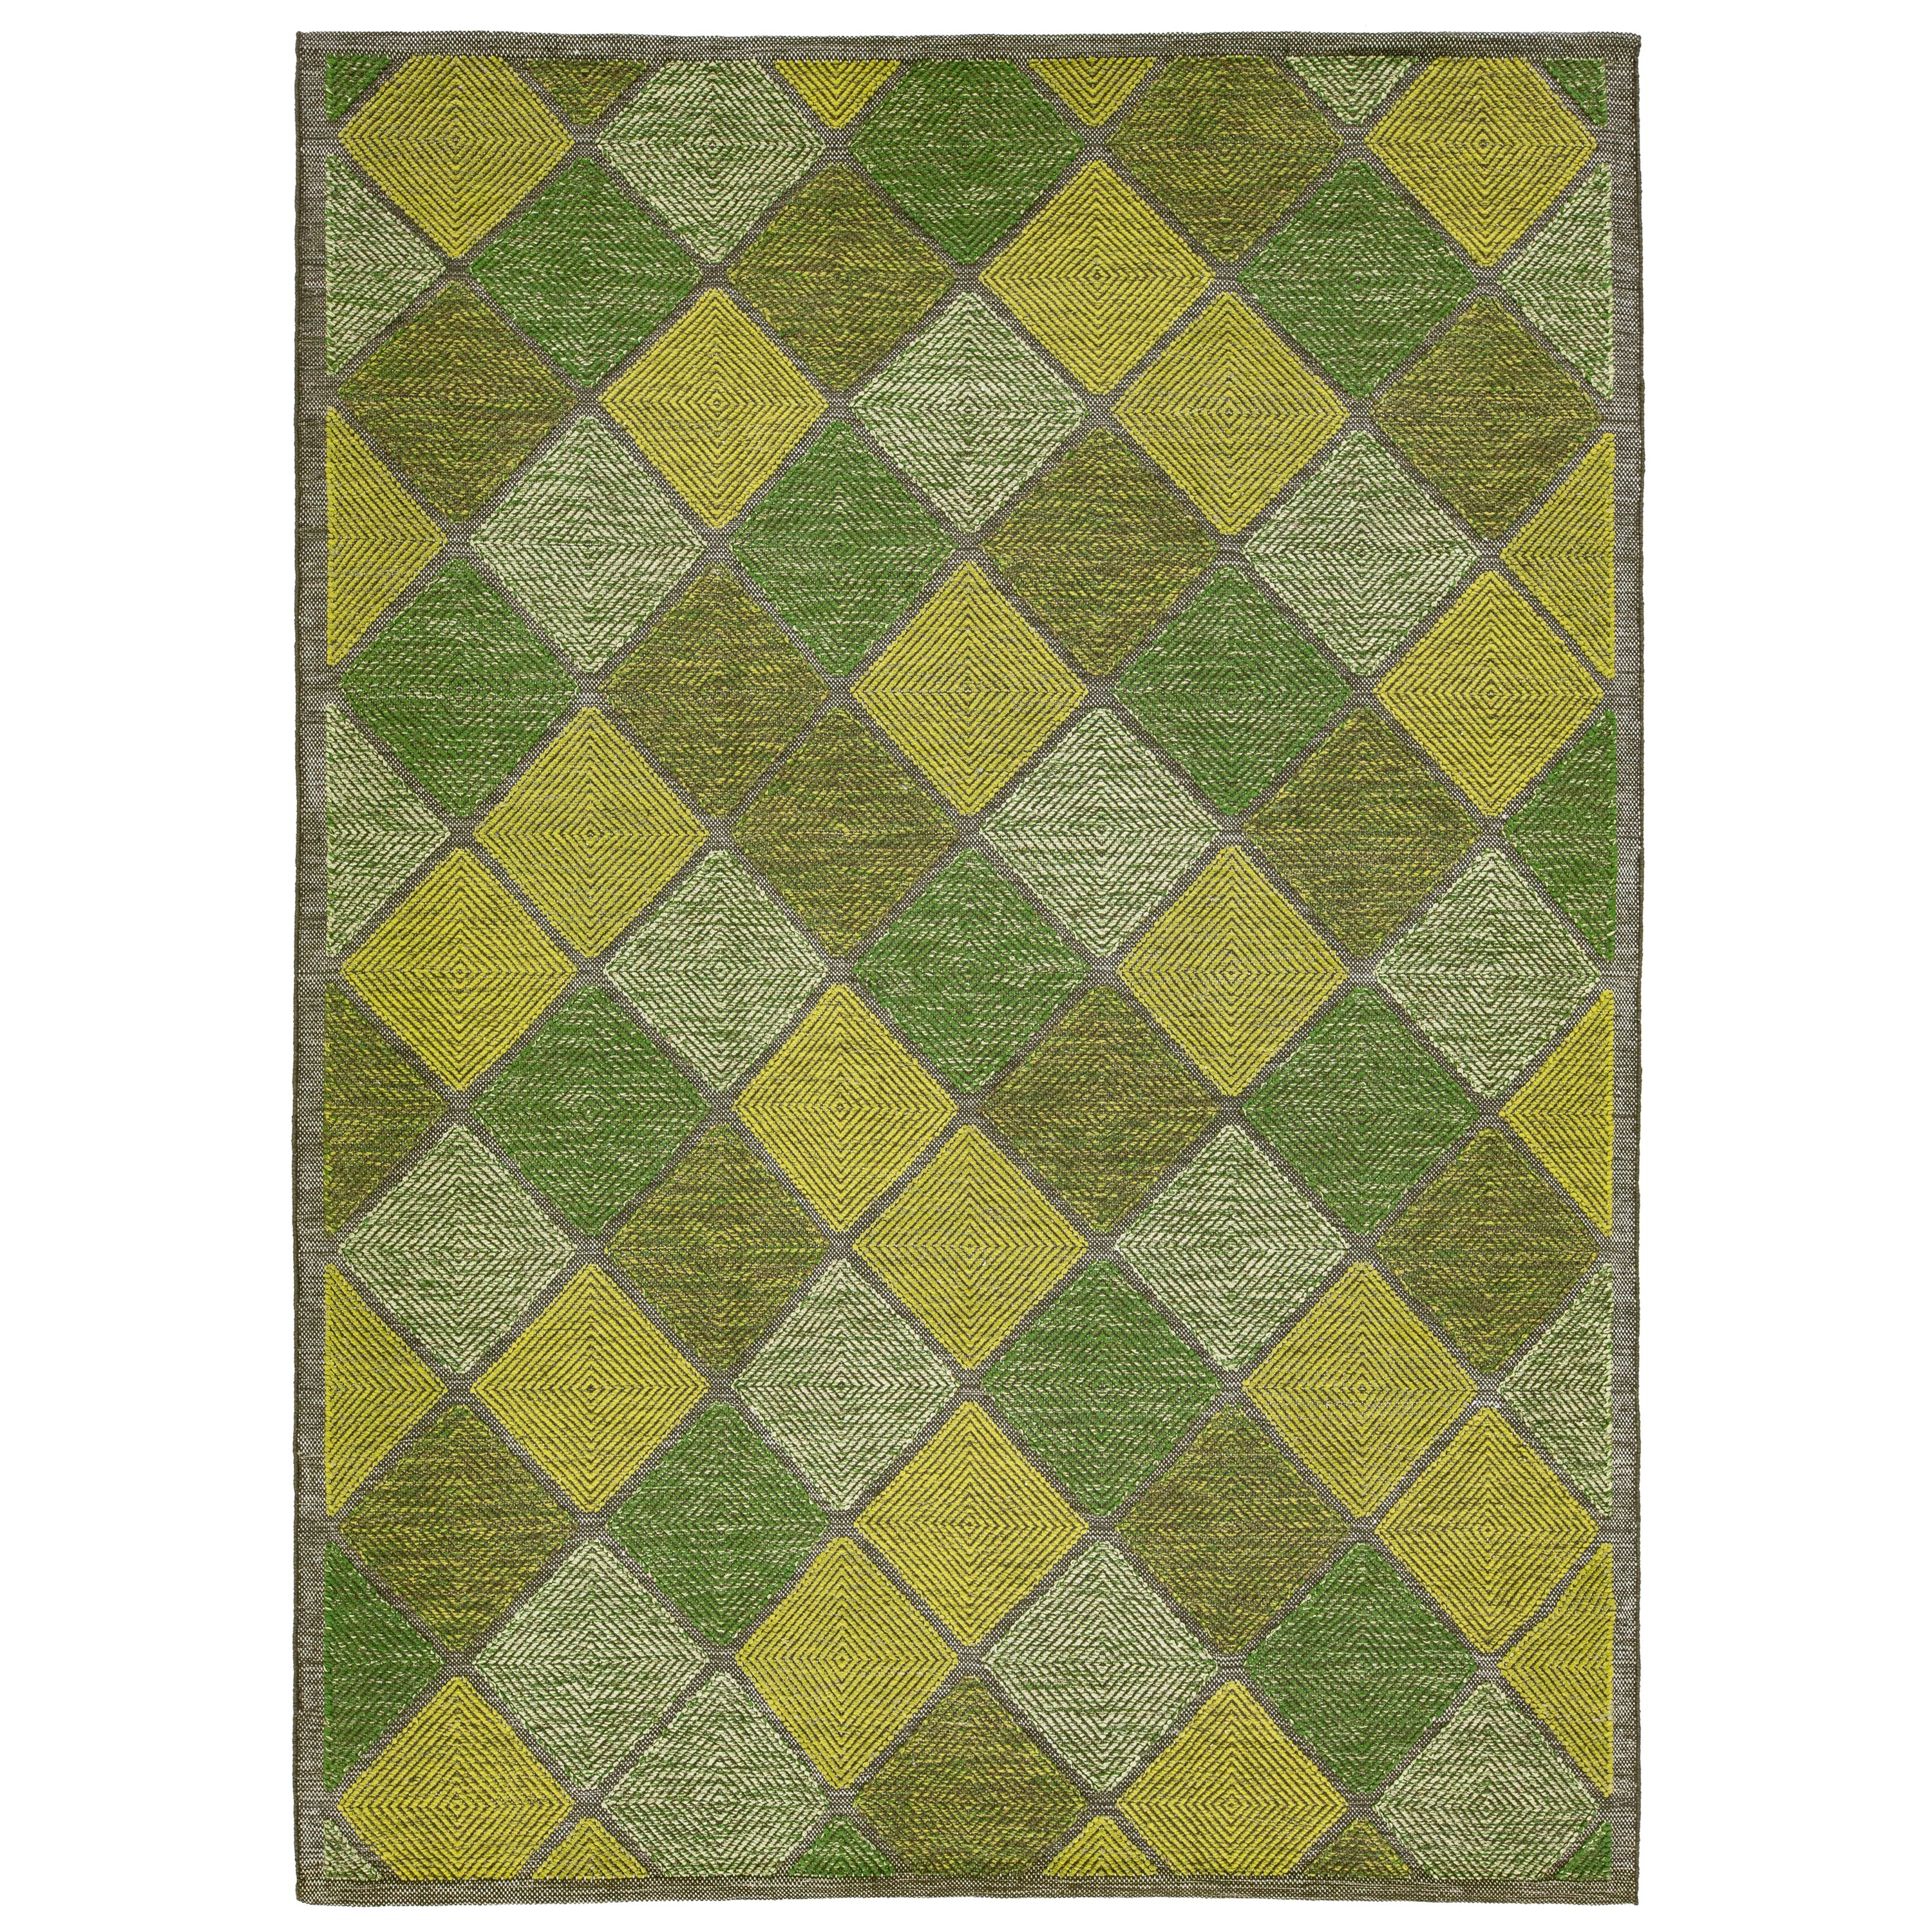 Grüner zeitgenössischer Wollteppich im schwedischen Stil, handgefertigt mit geometrischem Muster